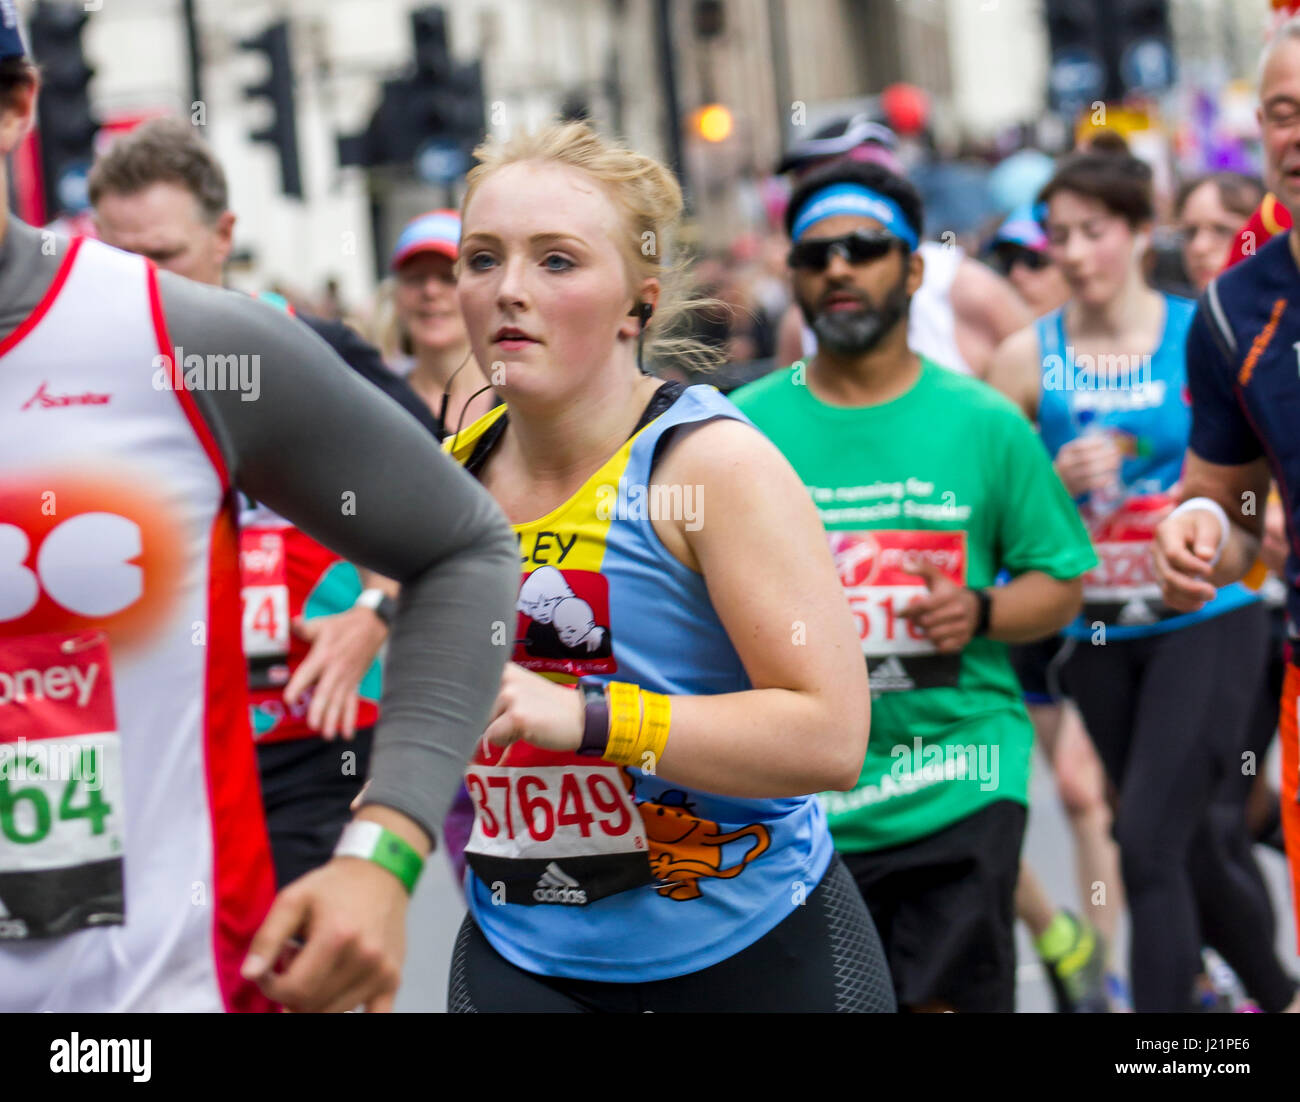 St Jame's park, london, Regno Unito. 23 apr, 2017. migliaia di prendere parte alla trentasettesima maratona di Londra credito: Alan fraser/alamy live news Foto Stock